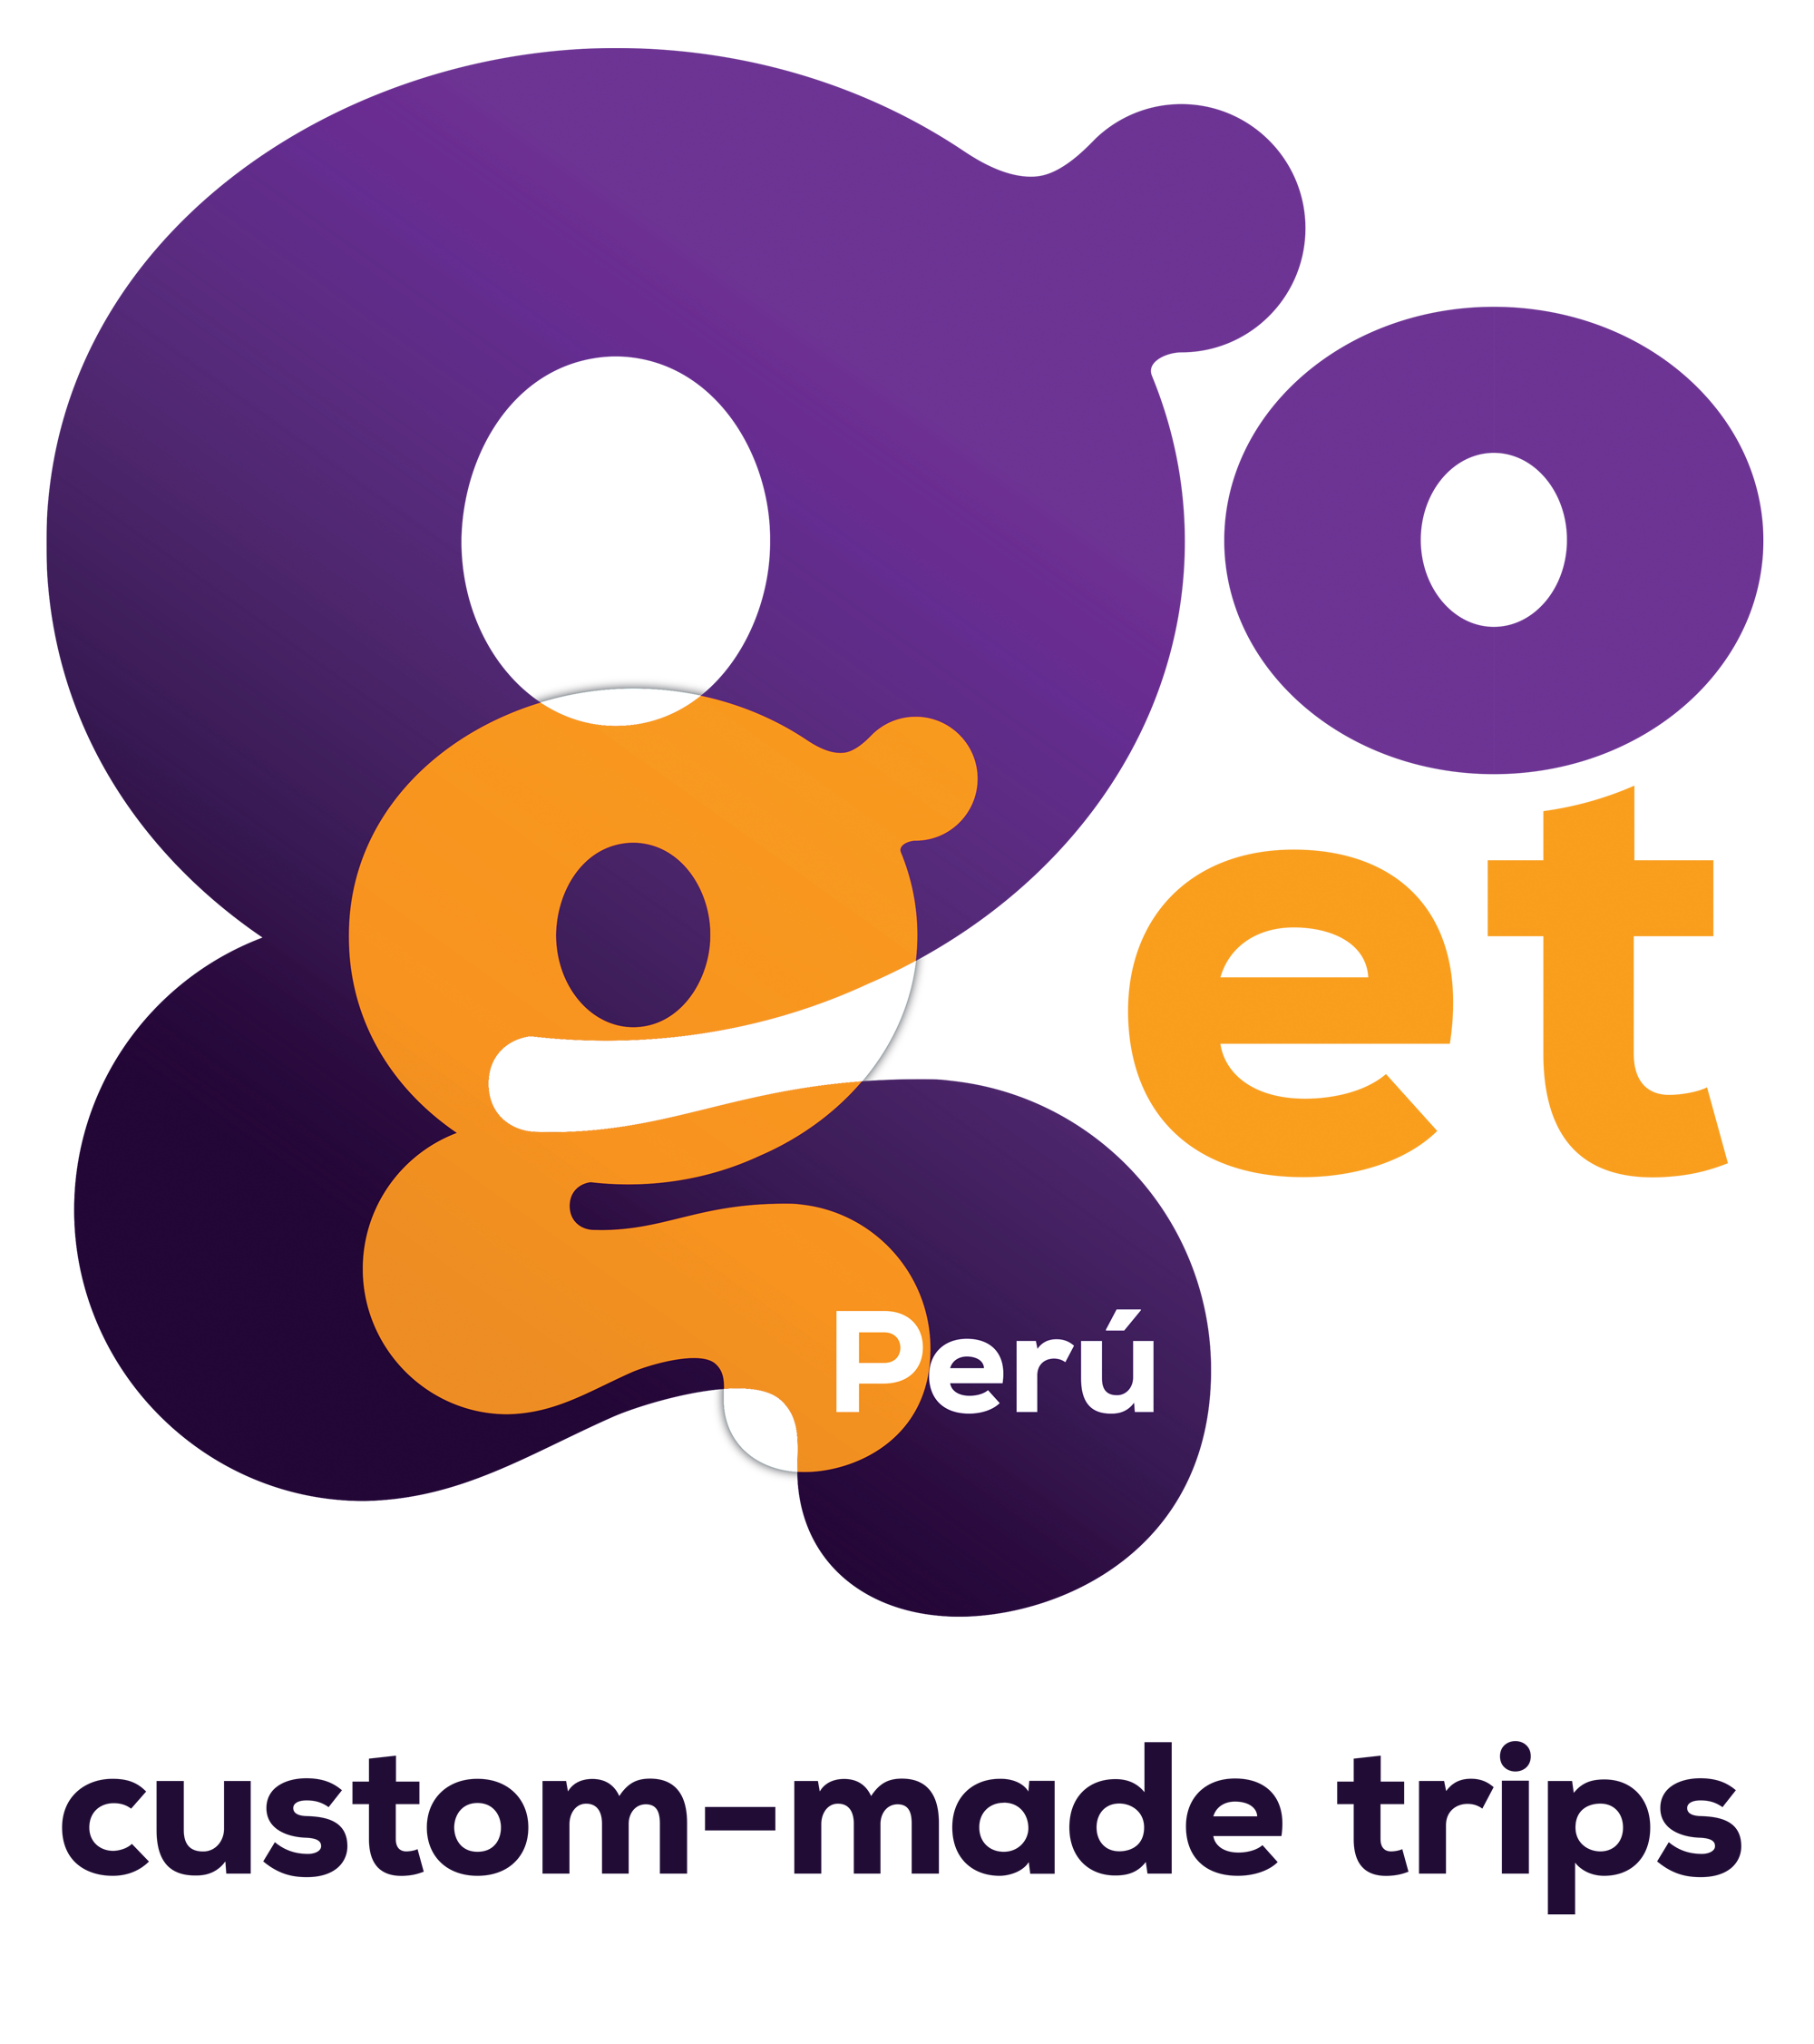 Go Get Peru